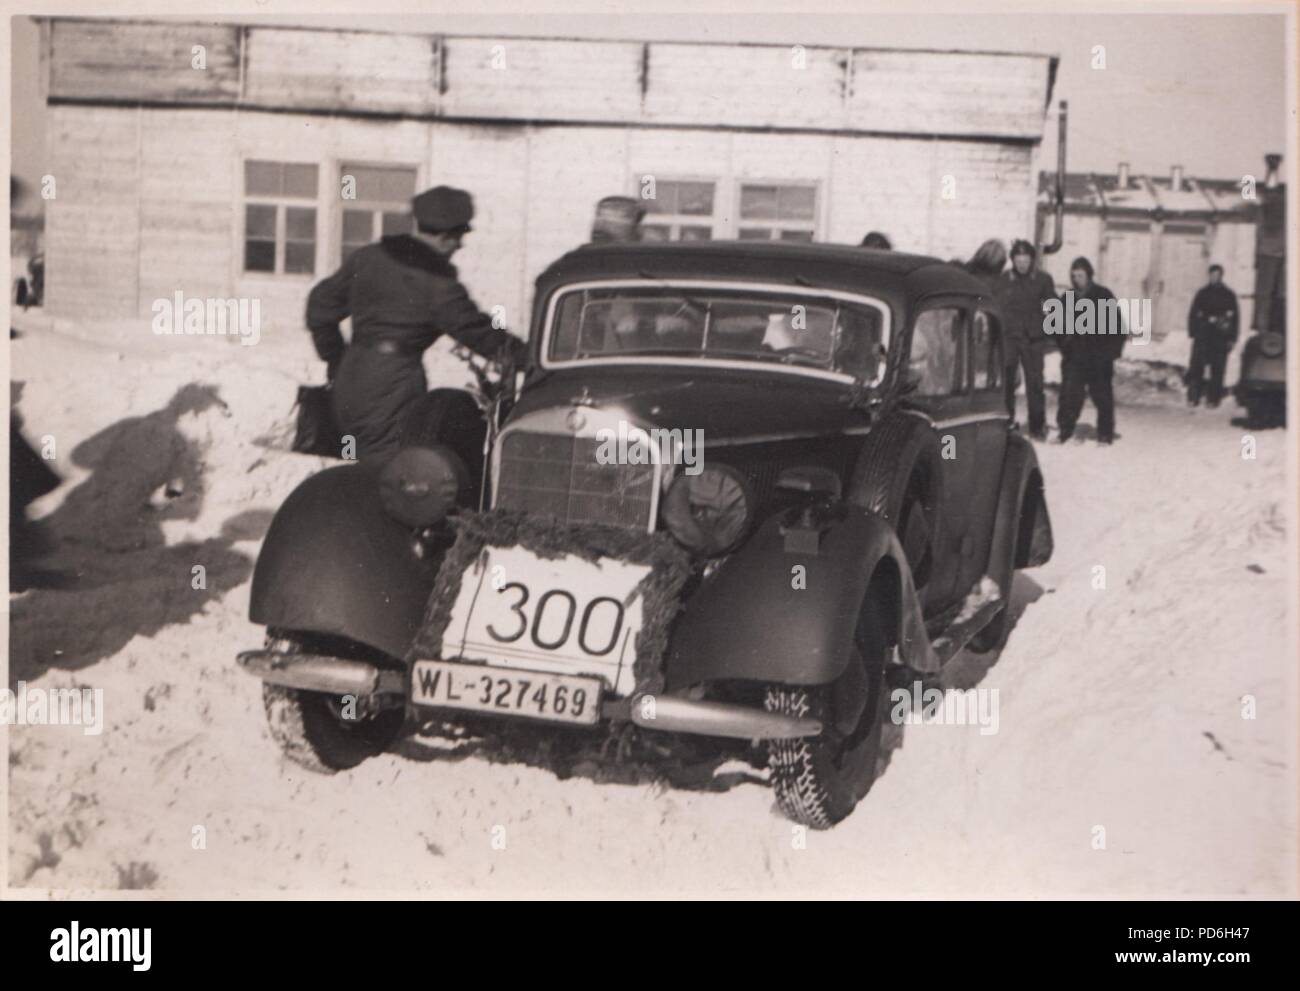 Droit de l'album photo de l'Oberleutnant Oscar Müller de la Kampfgeschwader 1 : Une voiture du personnel portant une étiquette de la mission 300 attend le retour de l'équipage de succesful 5./KG 1 à Dno Airfield en Russie, 1942. Banque D'Images